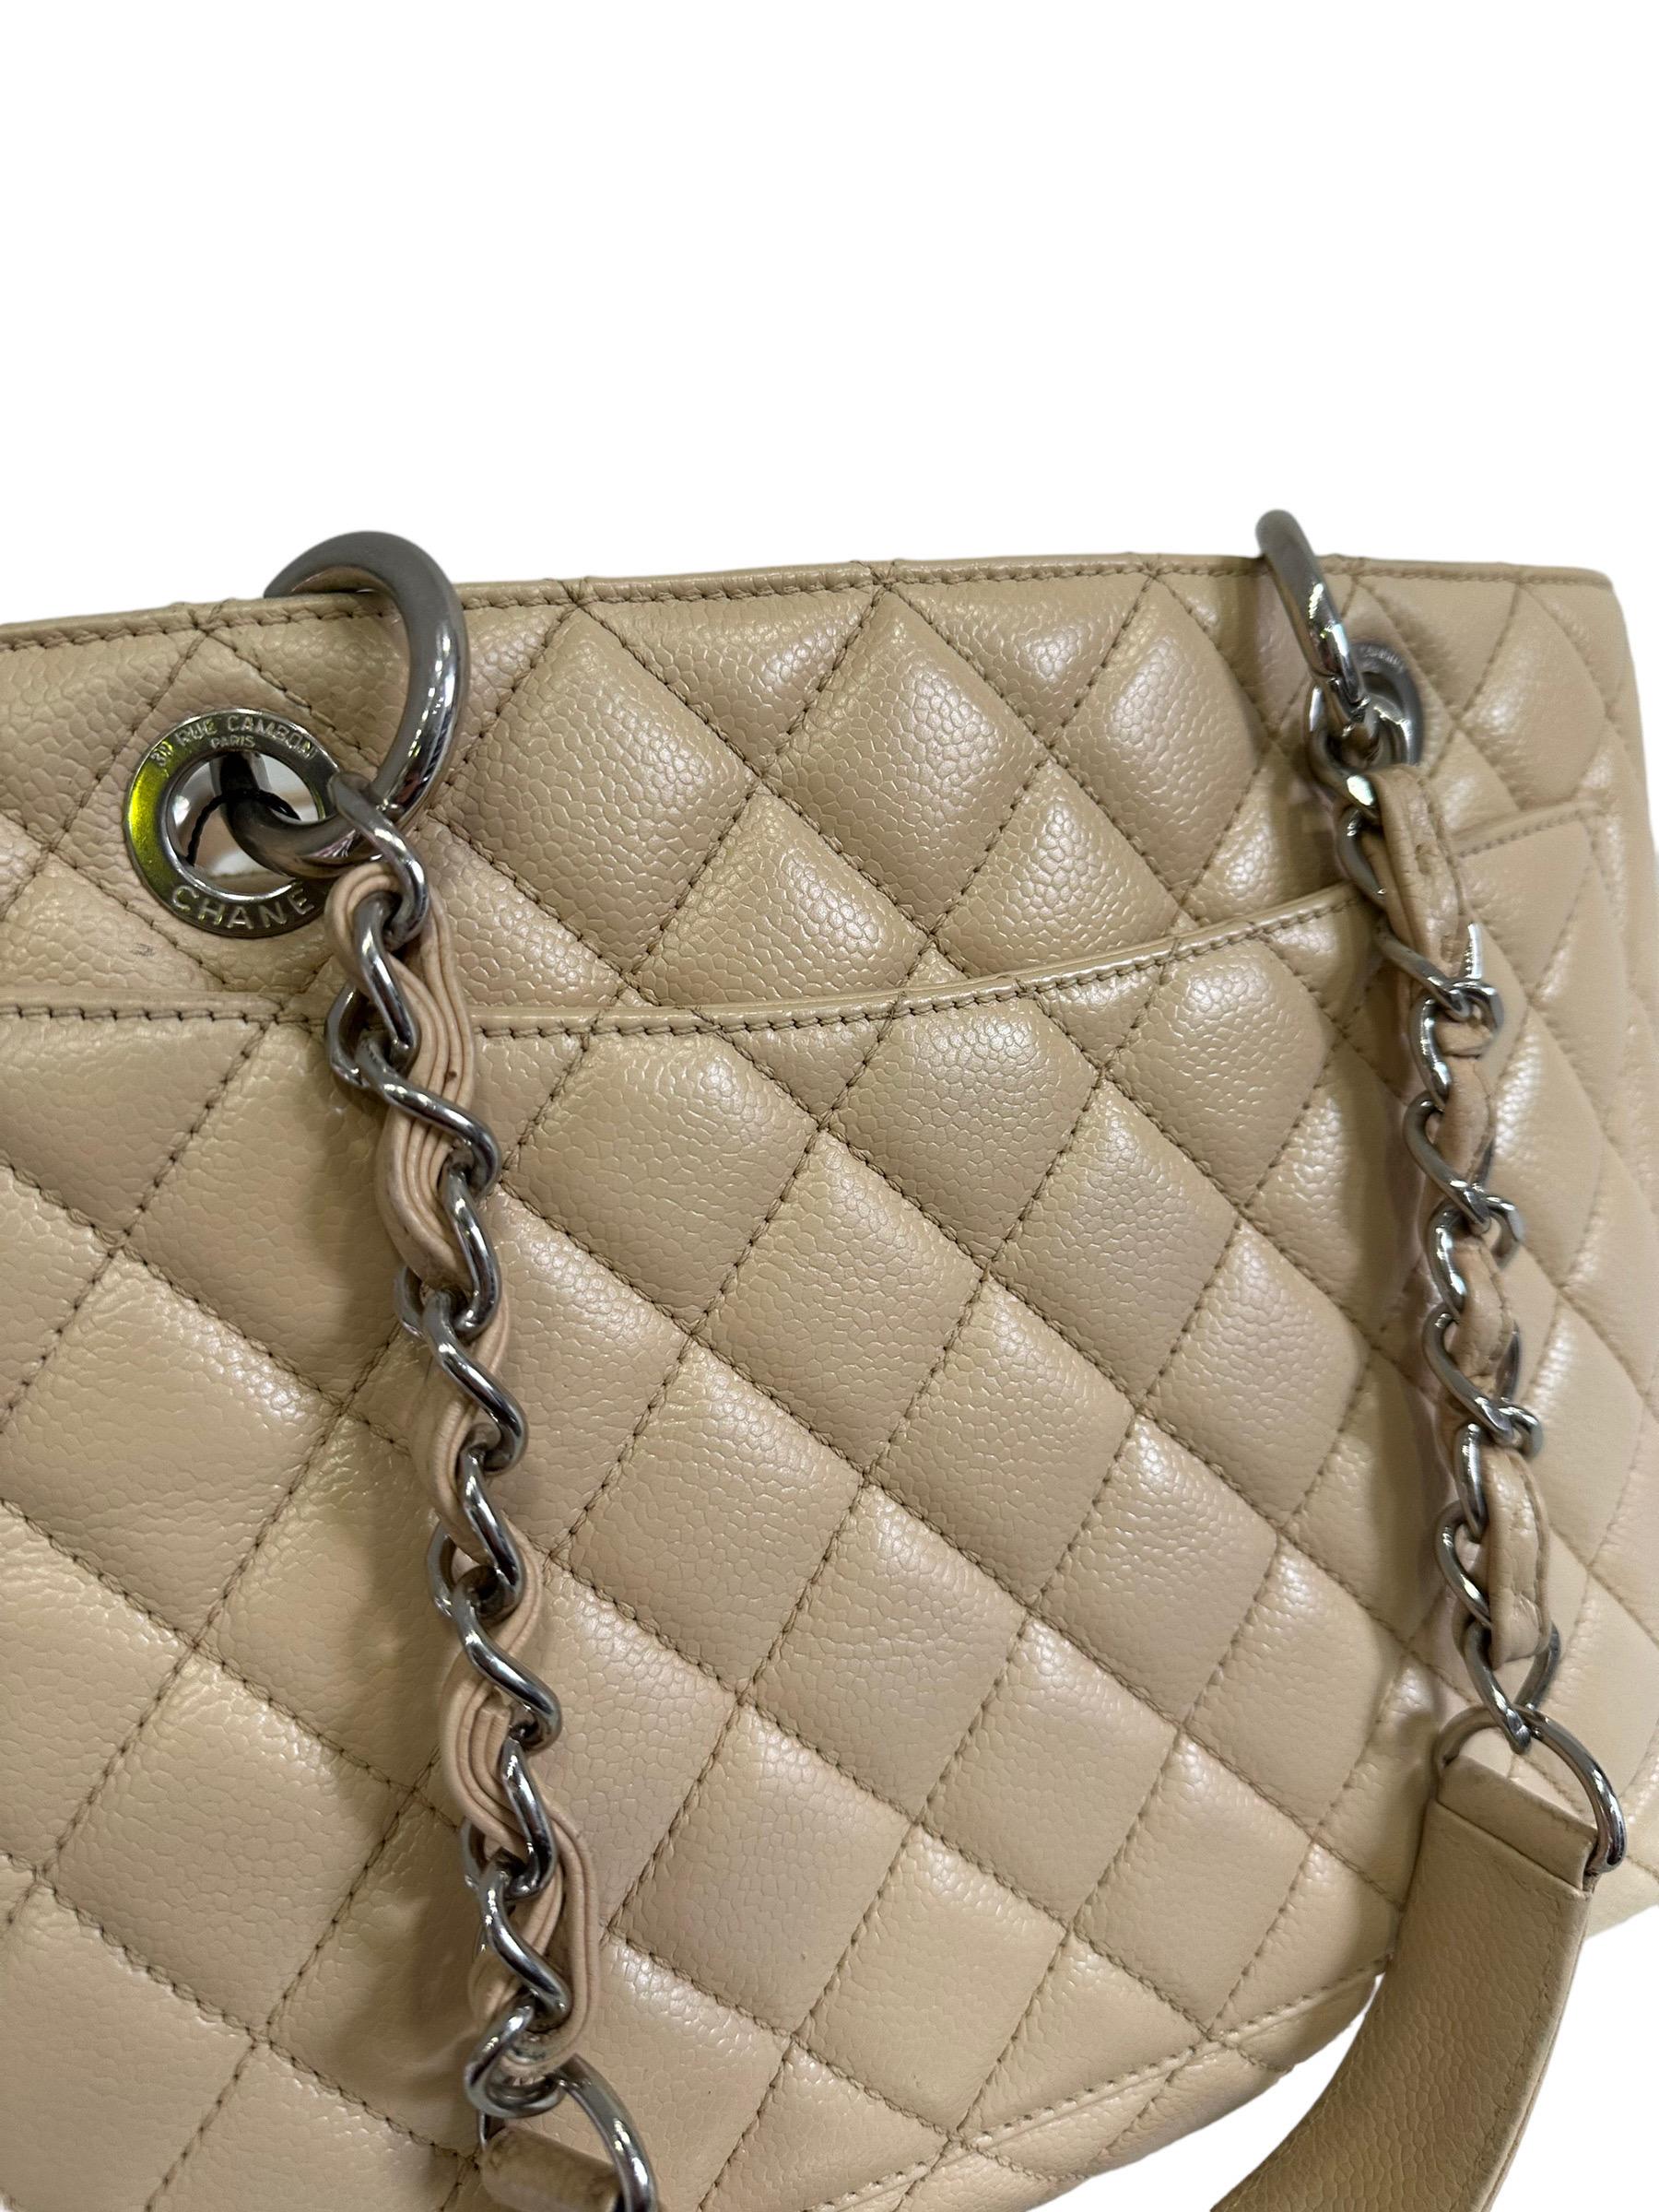 2014 Chanel Beige Leather GST Shoulder Bag For Sale 5